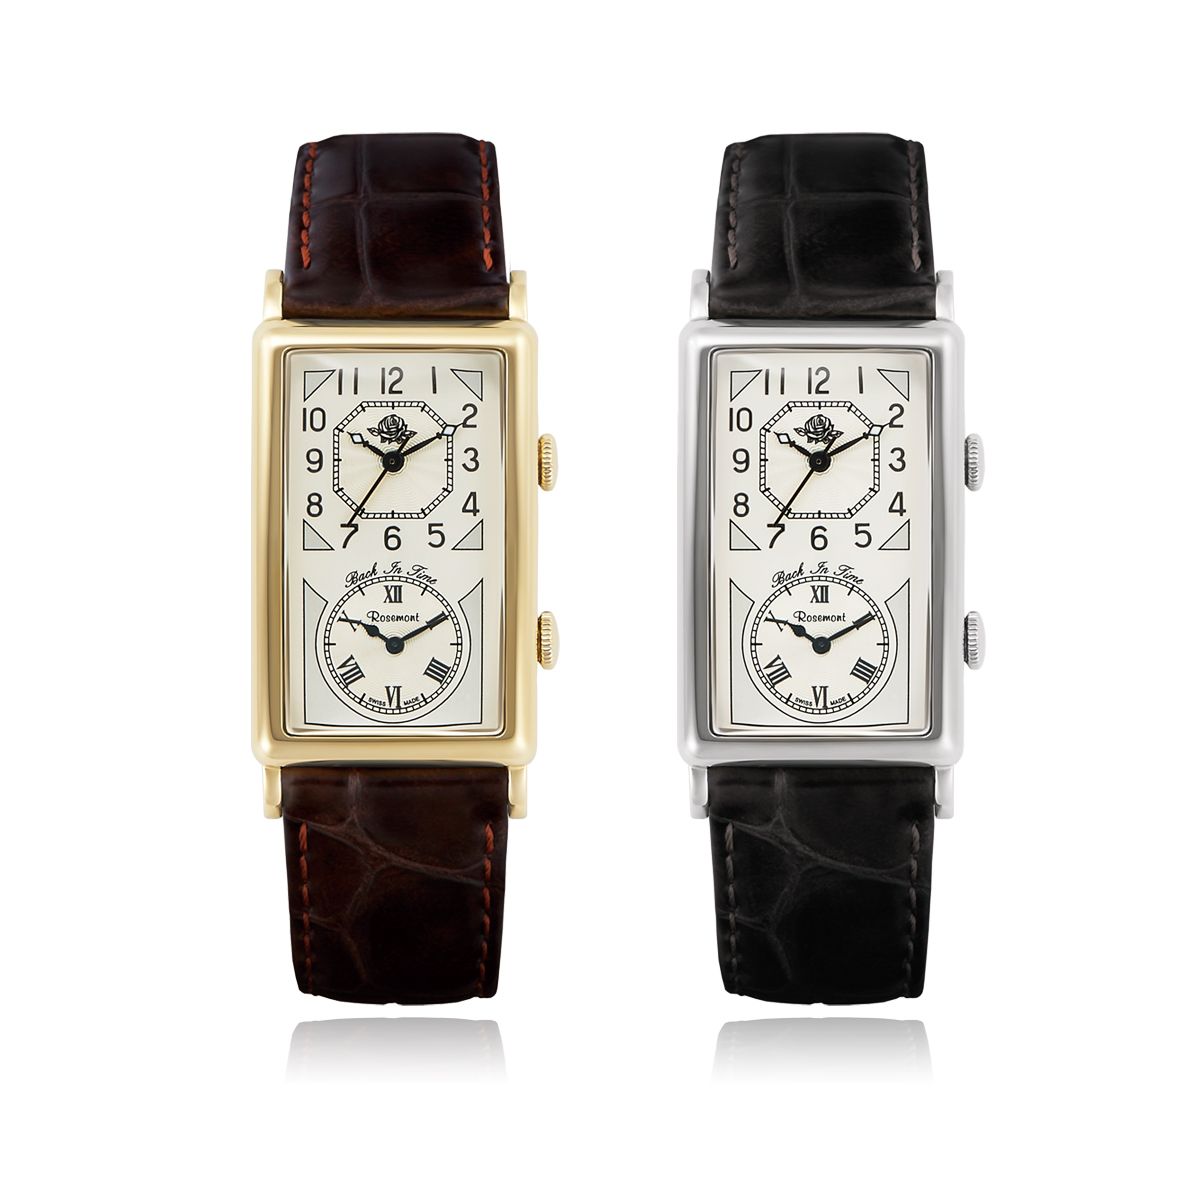 【ロゼモン】スイス製腕時計ブランド「Rosemont」が新シリーズを発表 60’sの雰囲気漂うメンズのデュアルタイムモデルが6/18発売